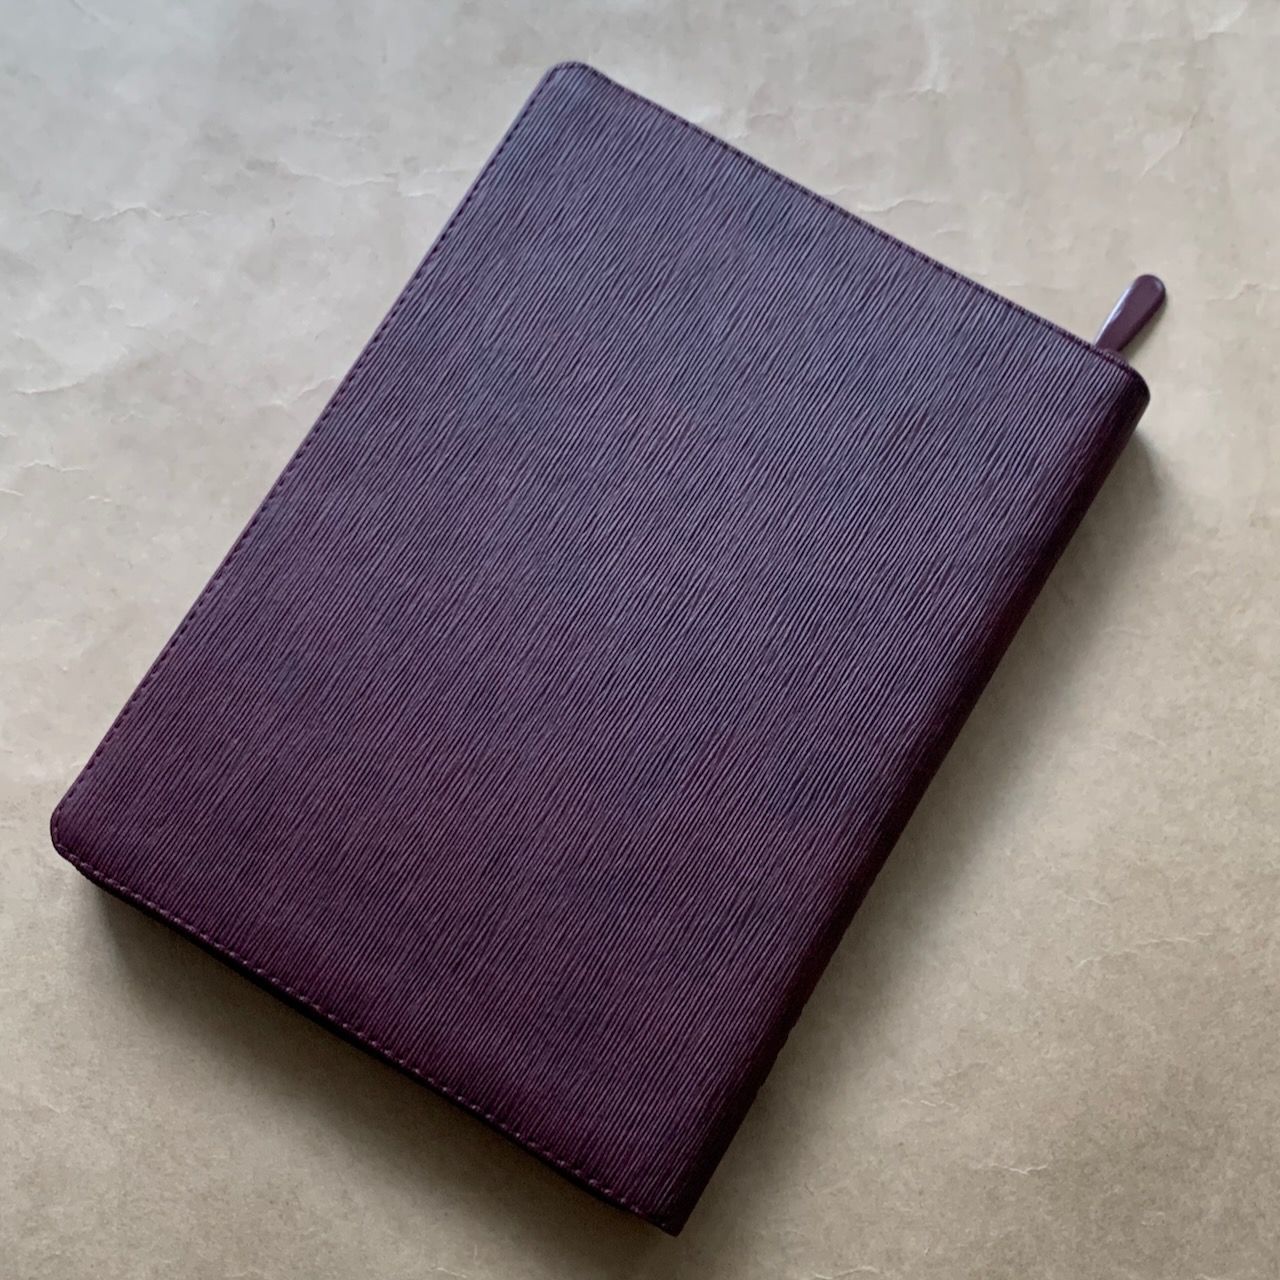 Библия 076z код F4, дизайн "Терновый венец", переплет из искусственной кожи на молнии, цвет темно-бордовый ребристый, размер 180x243 мм